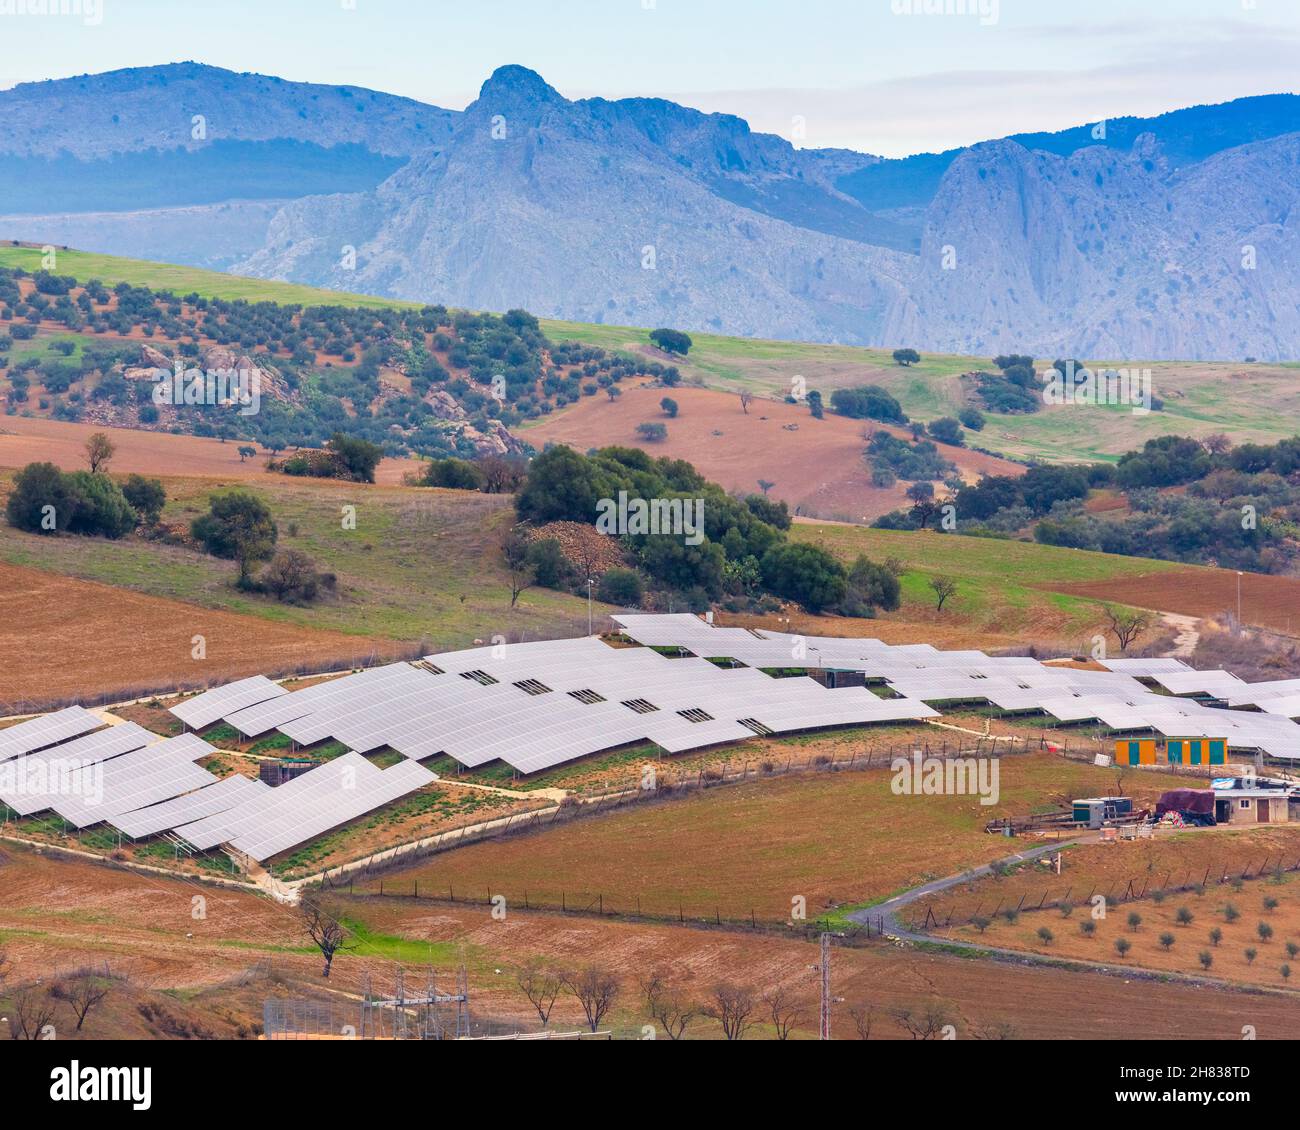 Panneaux solaires produisant de l'énergie électrique renouvelable Andalousie, sud de l'Espagne Banque D'Images